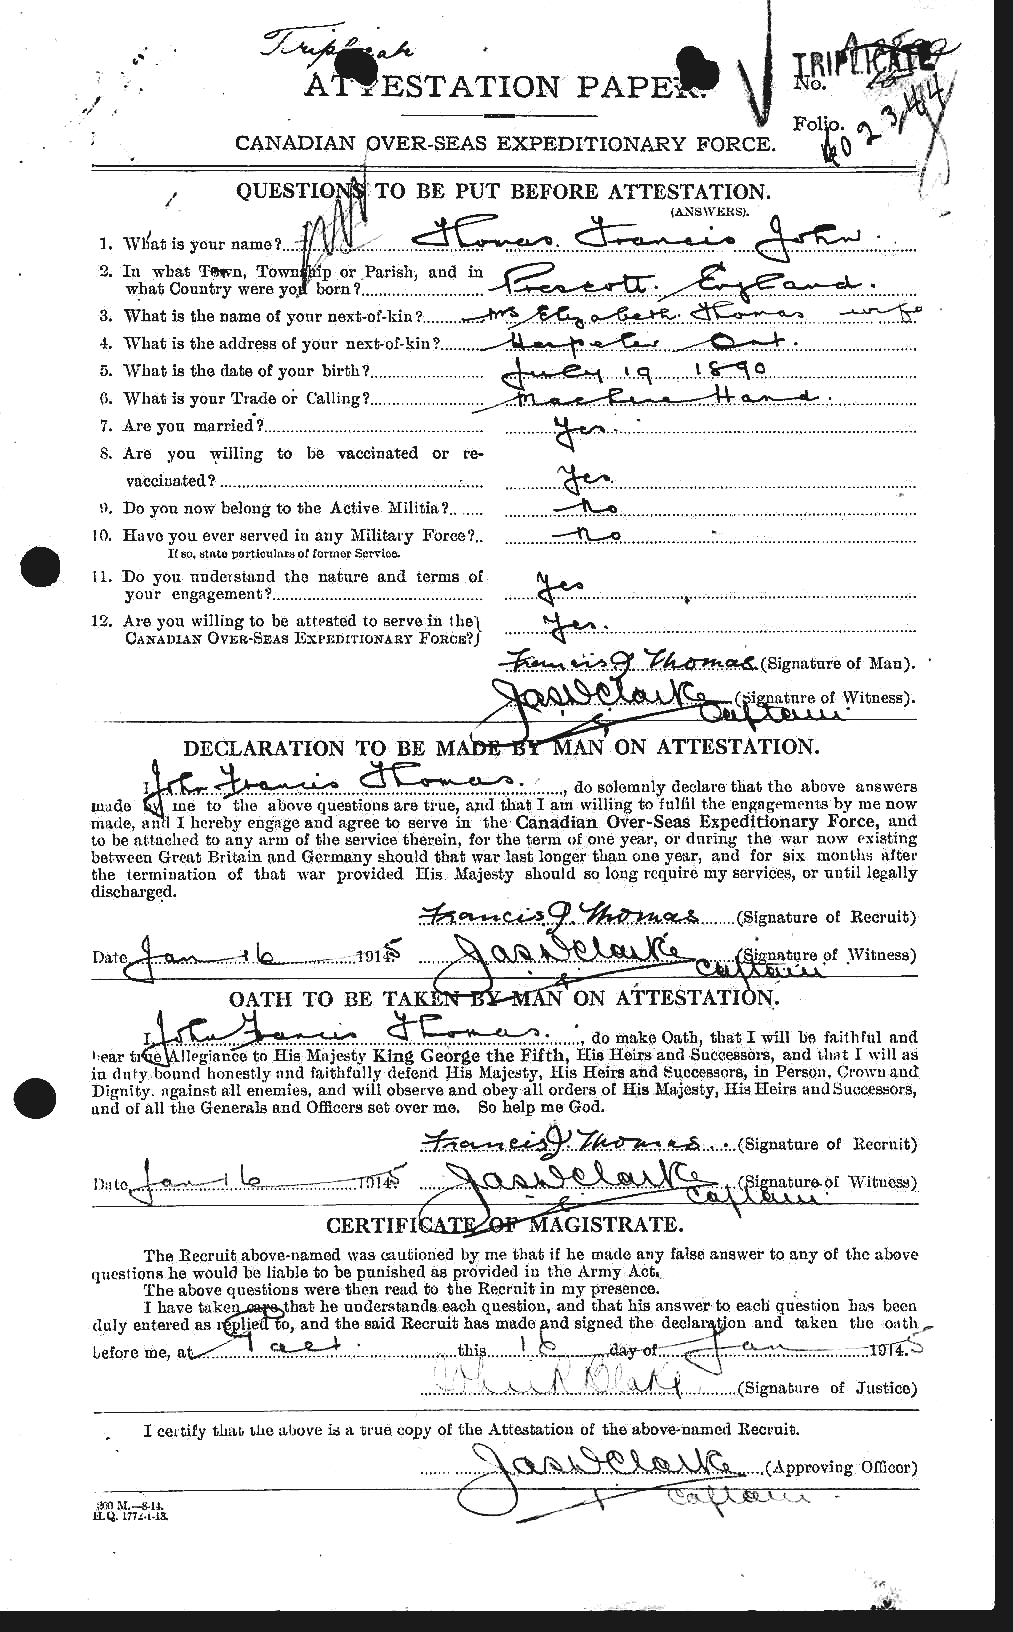 Dossiers du Personnel de la Première Guerre mondiale - CEC 631582a